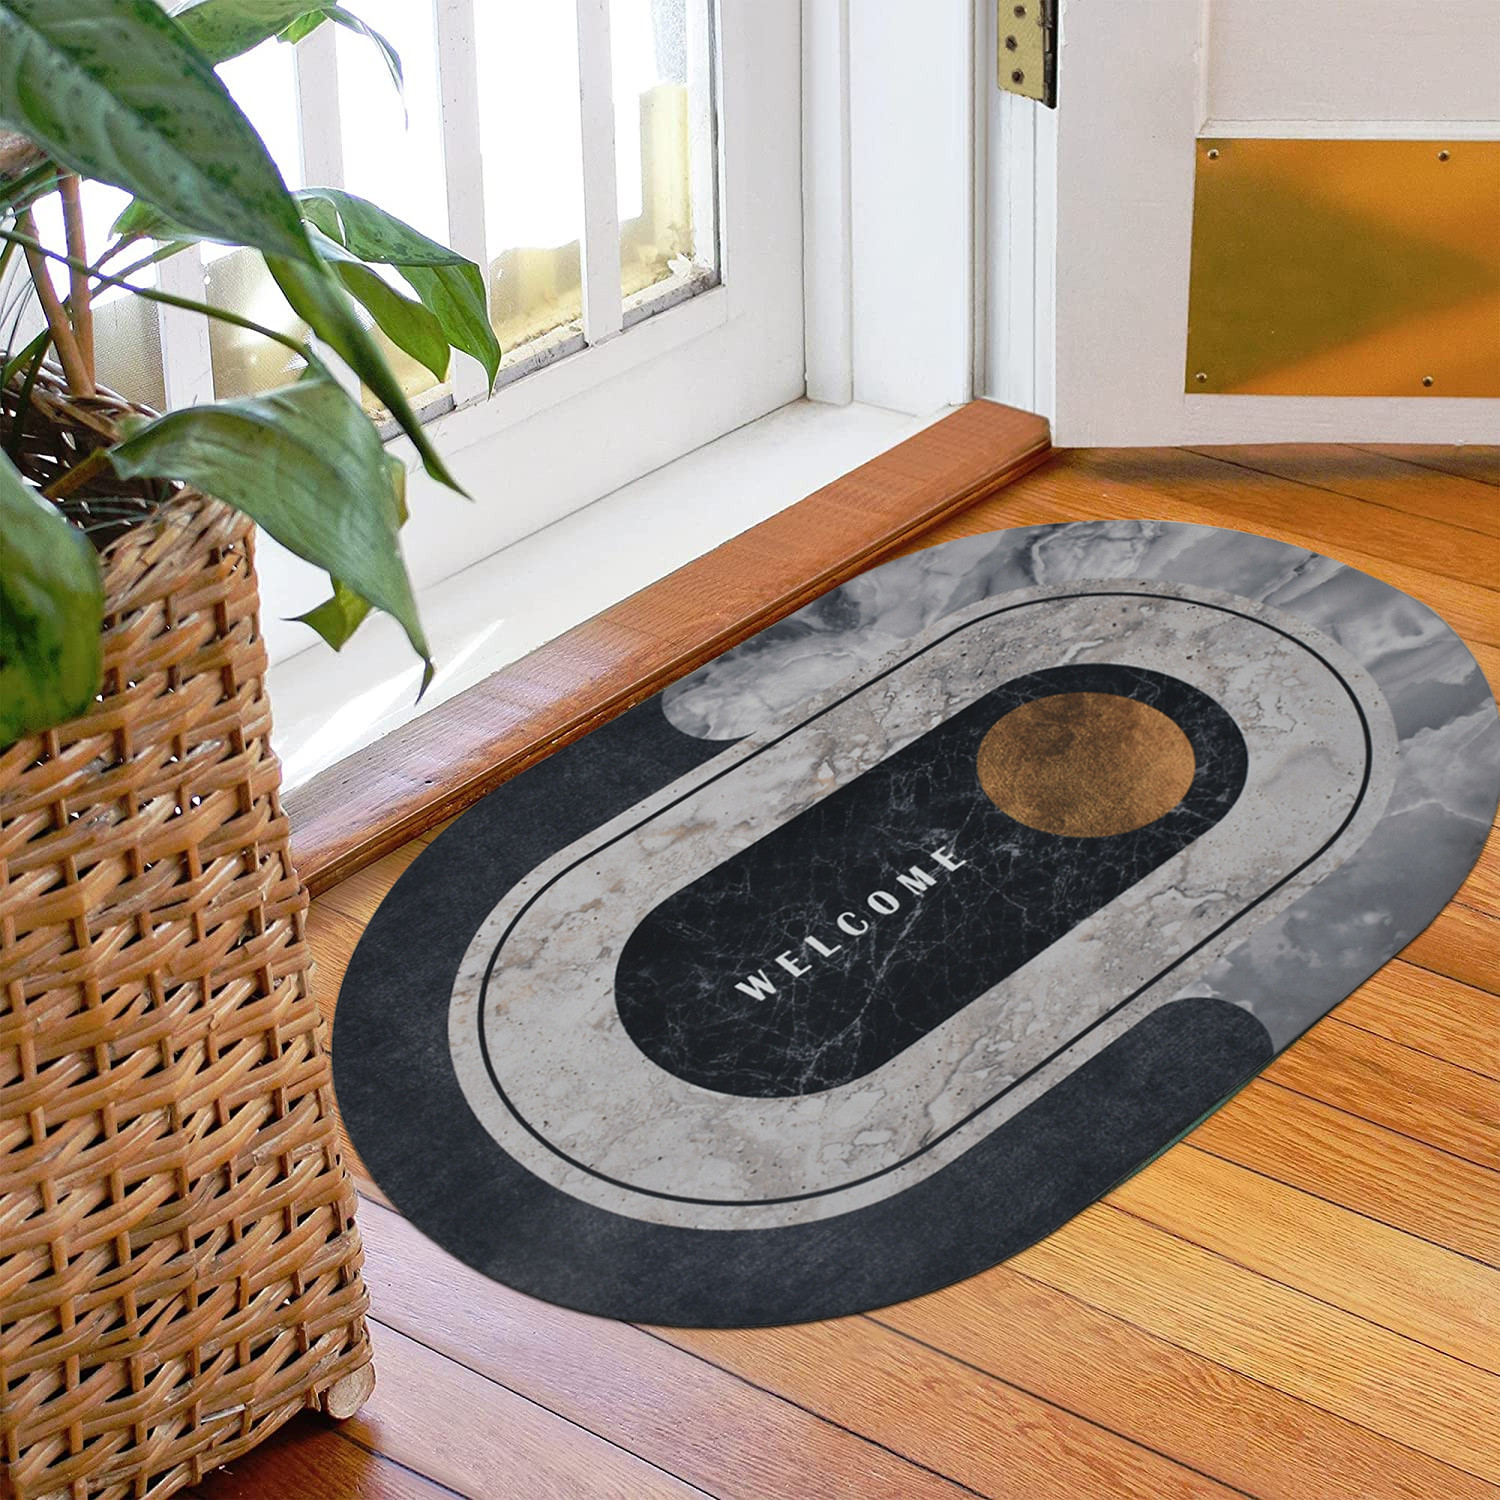 Kuber Industries Doormat|Doormat for Door Entrance|Doormats for Rooms|Doormat for Home|Memory Foam welcome Doormat (White)